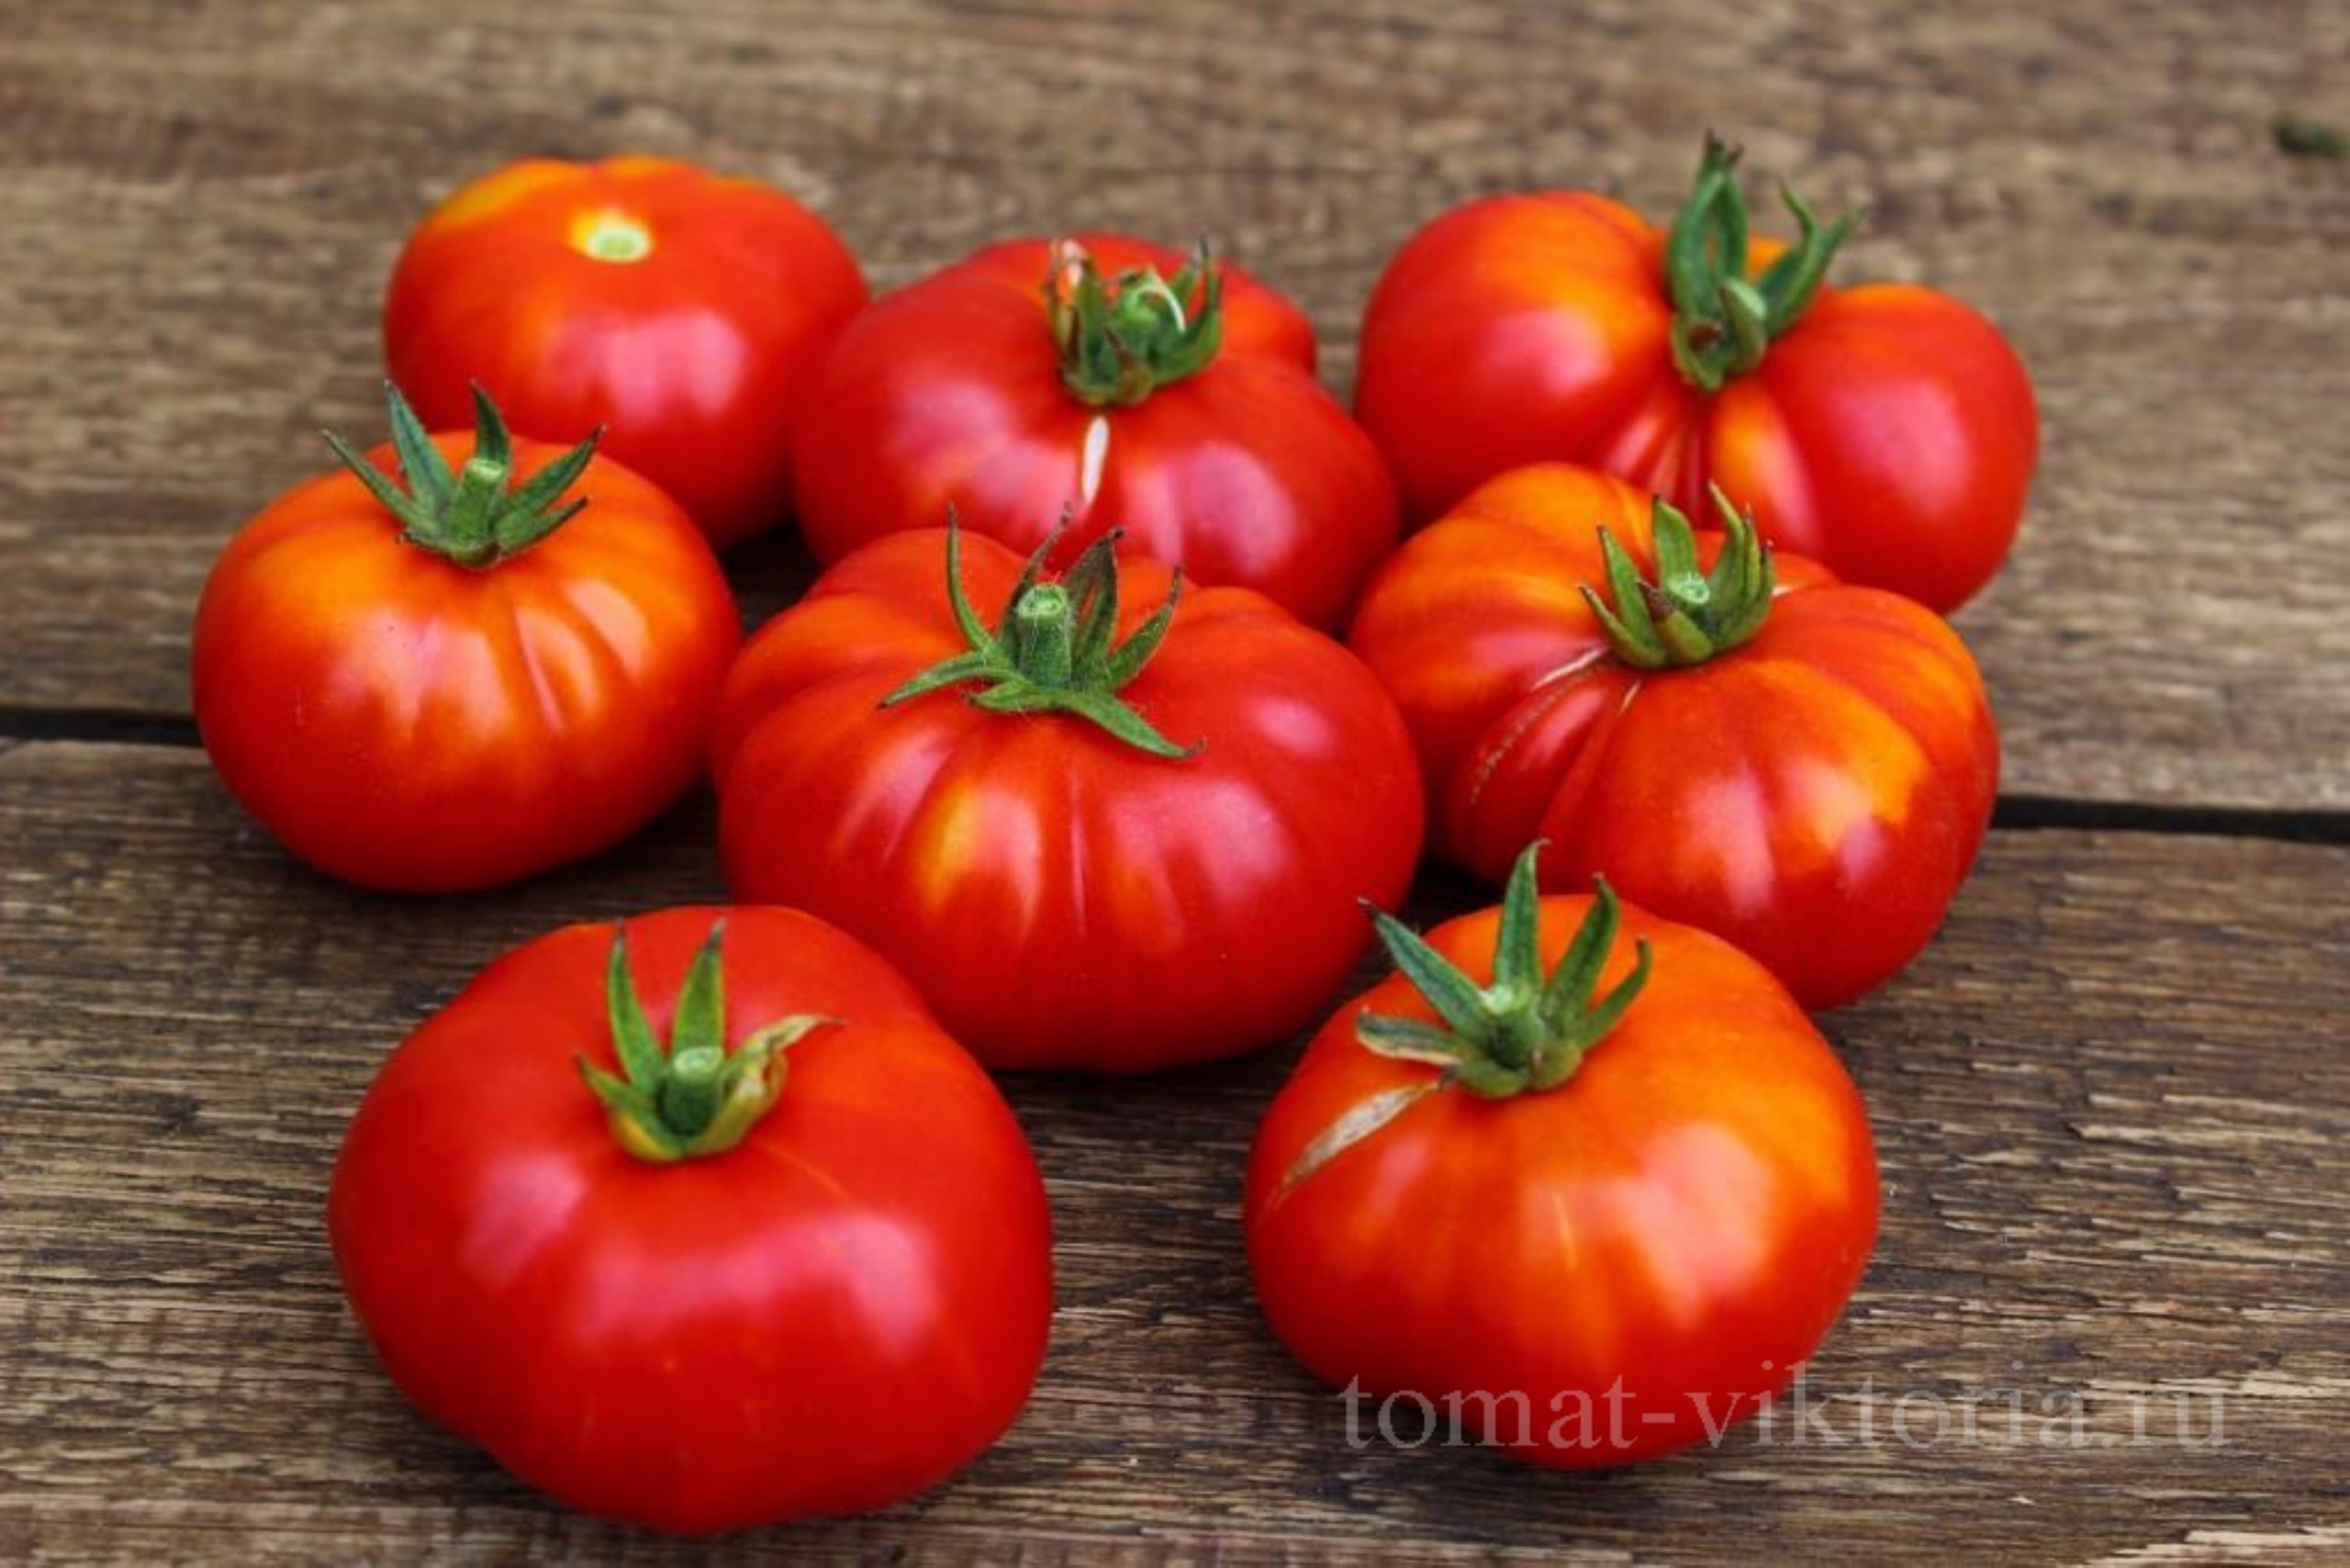 Как заказать - Томаты у Виктории - Купить семена томатов